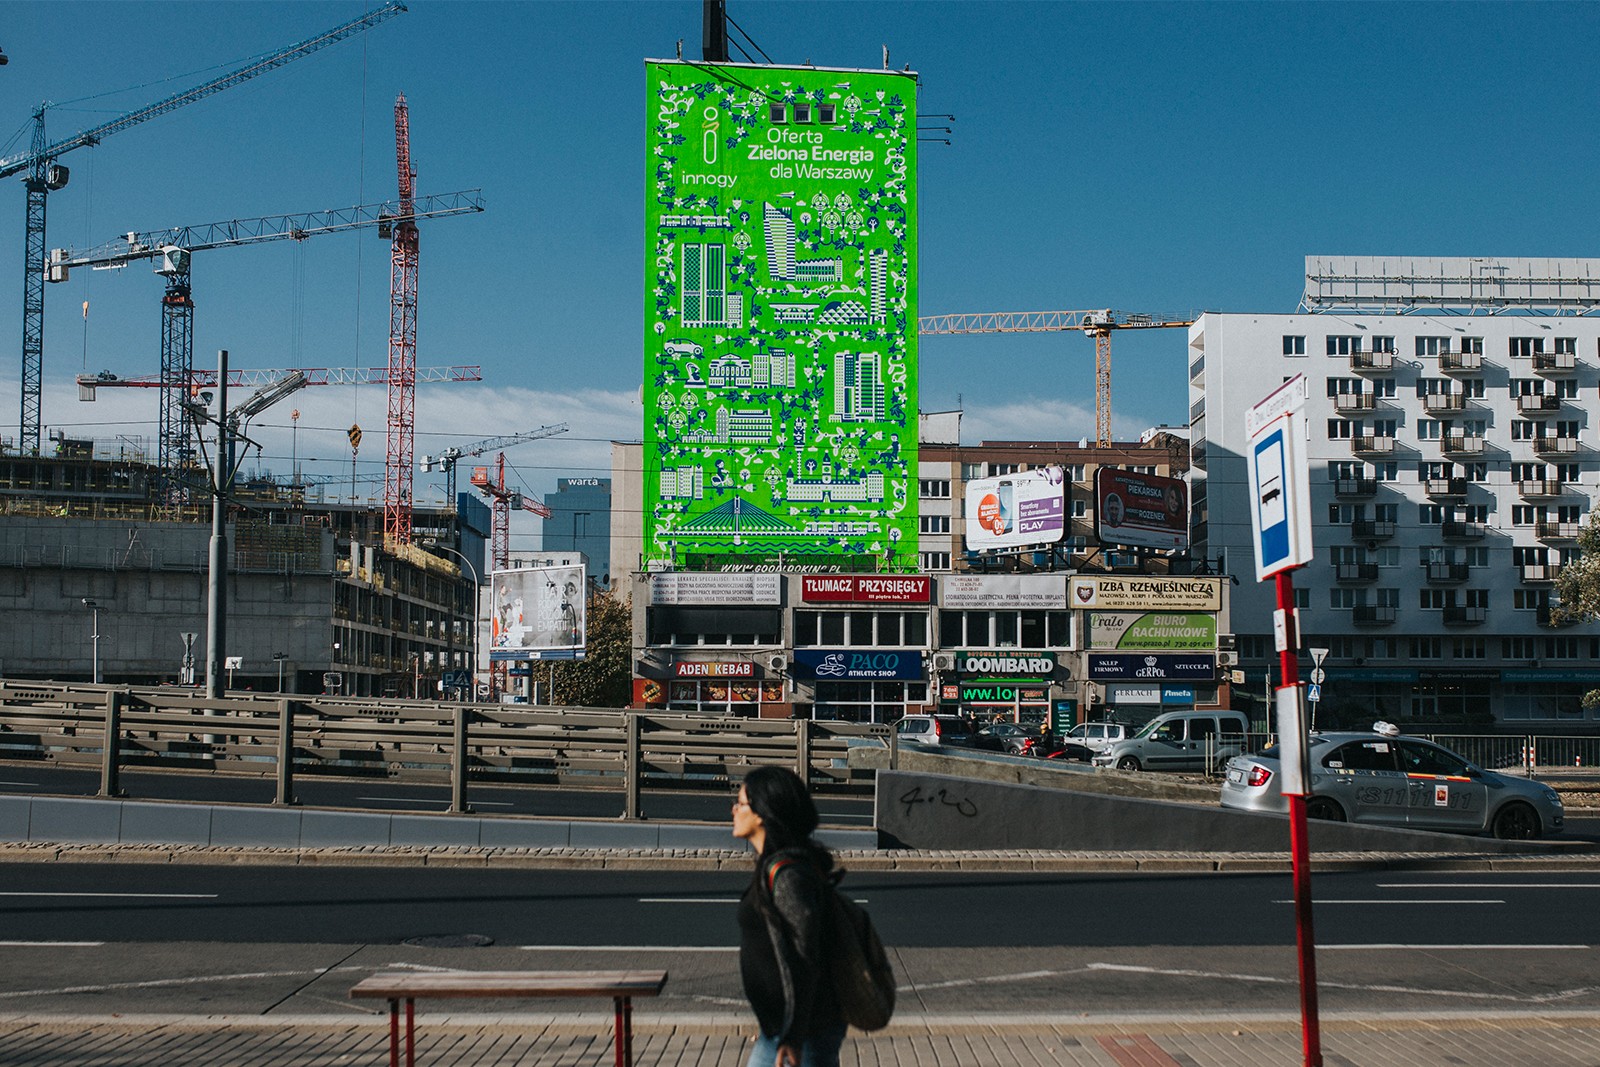 Mural reklamowy w centrum Warszawy dla marki innogy | Zielona Energia dla Warszawy | Portfolio